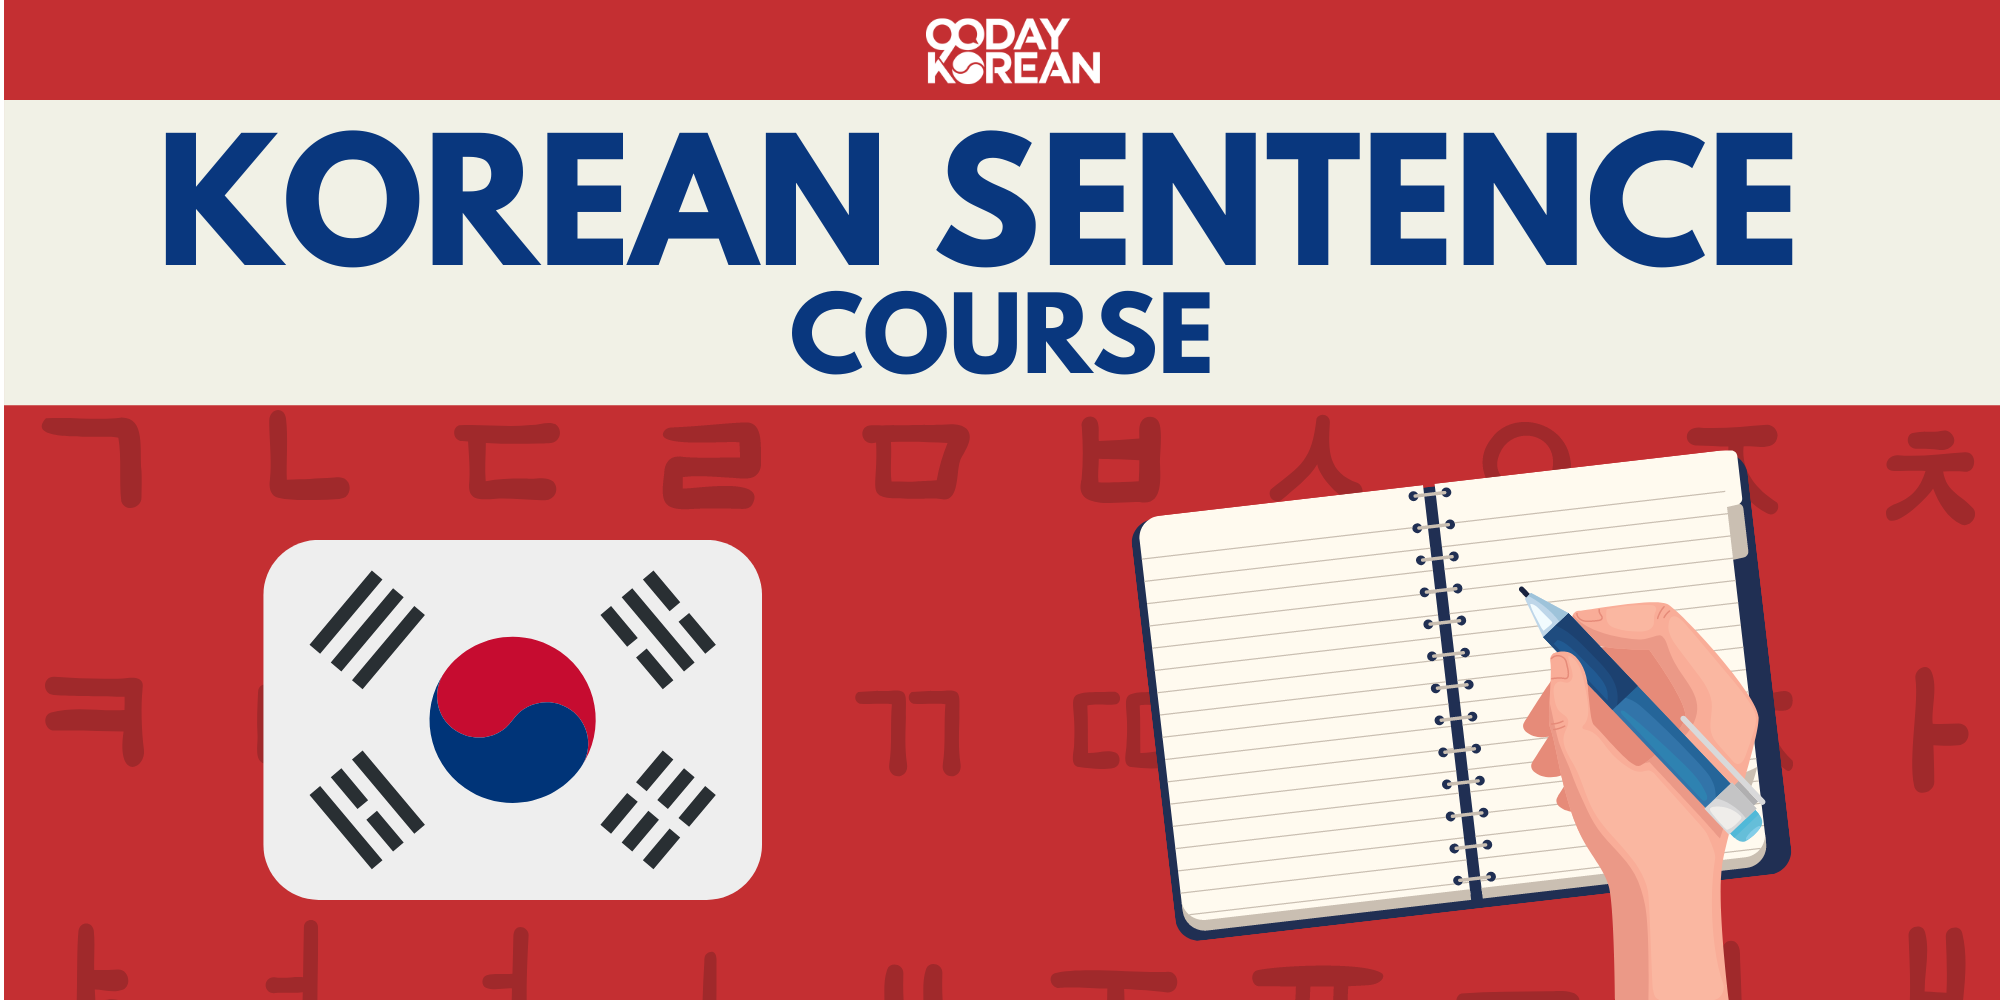 Korean Sentence Course